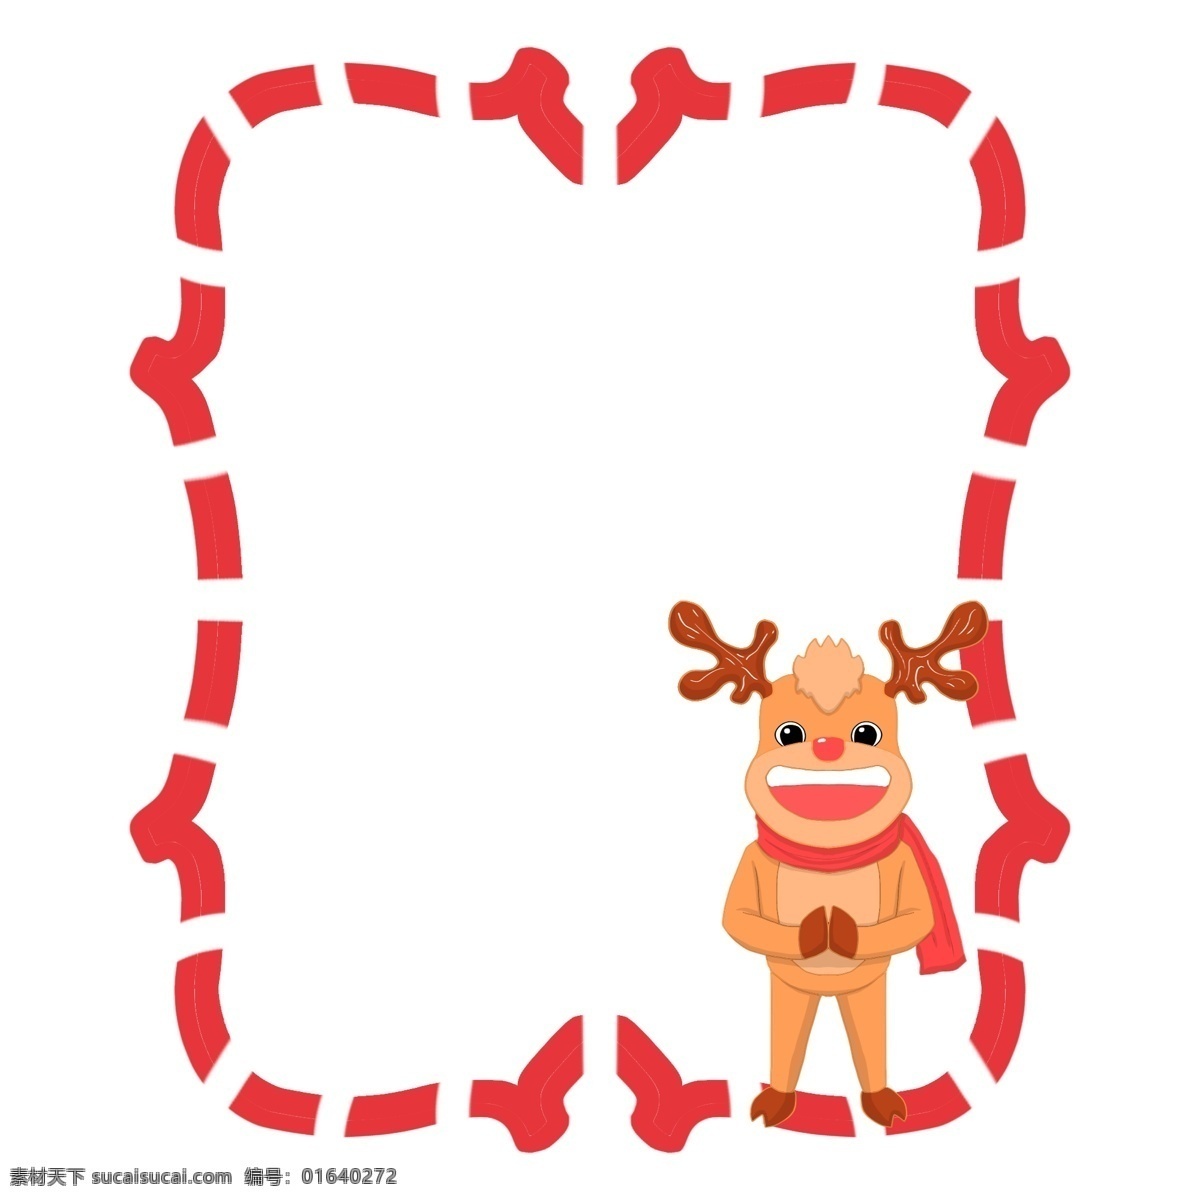 手绘 圣诞 小鹿 边框 圣诞鹿 红色边框 创意边框 卡通小鹿 手绘小鹿 小鹿插画 鹿角